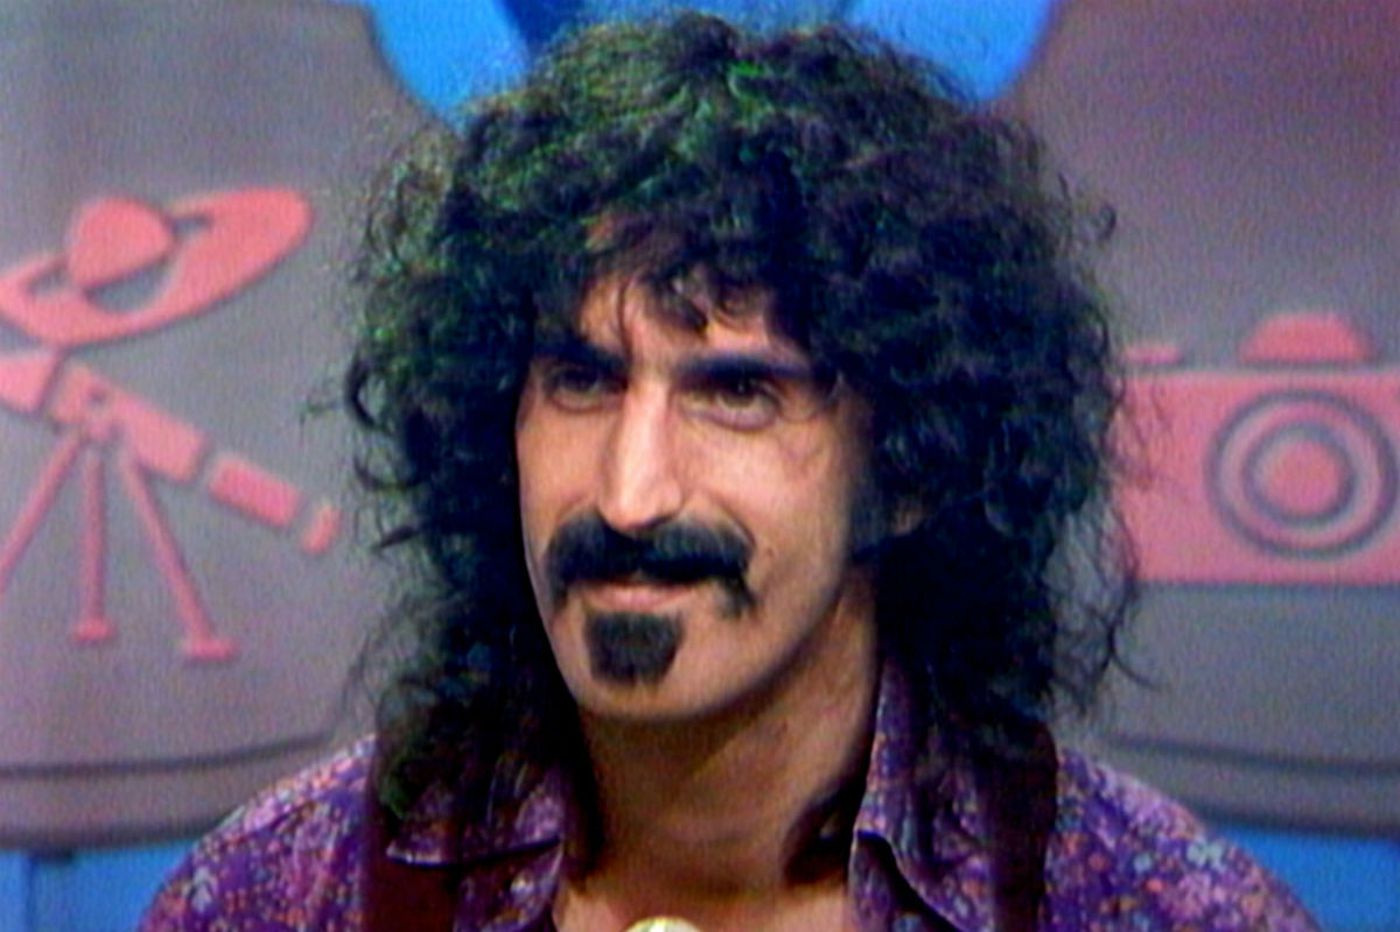 Frank Zappa, avagy jogunk van nem normálisnak lenni